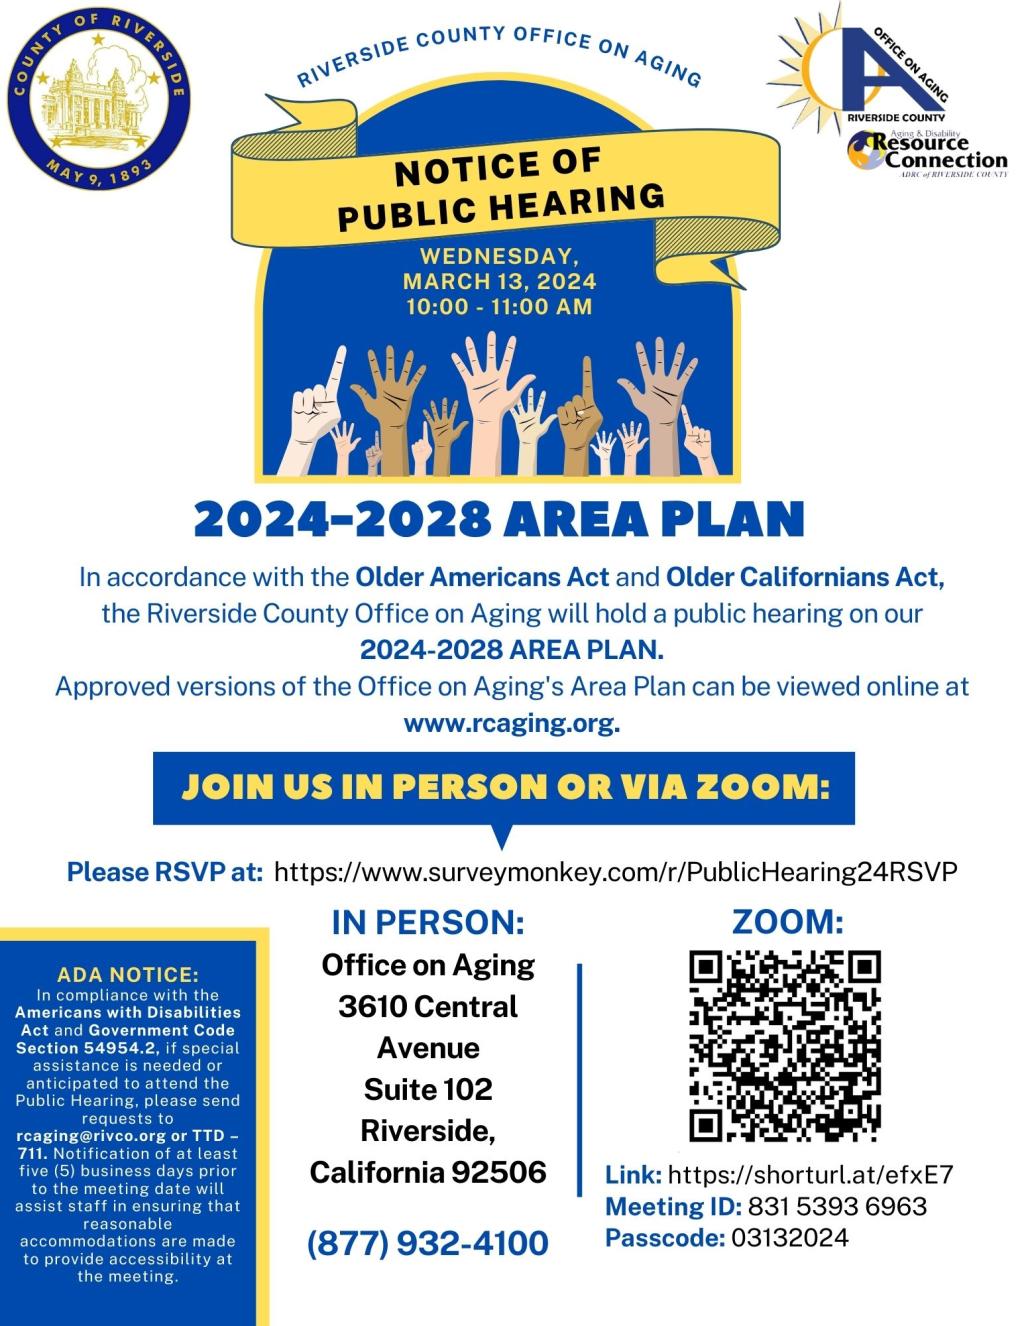 Area Plan 2024-2028 Public Hearing Flyer